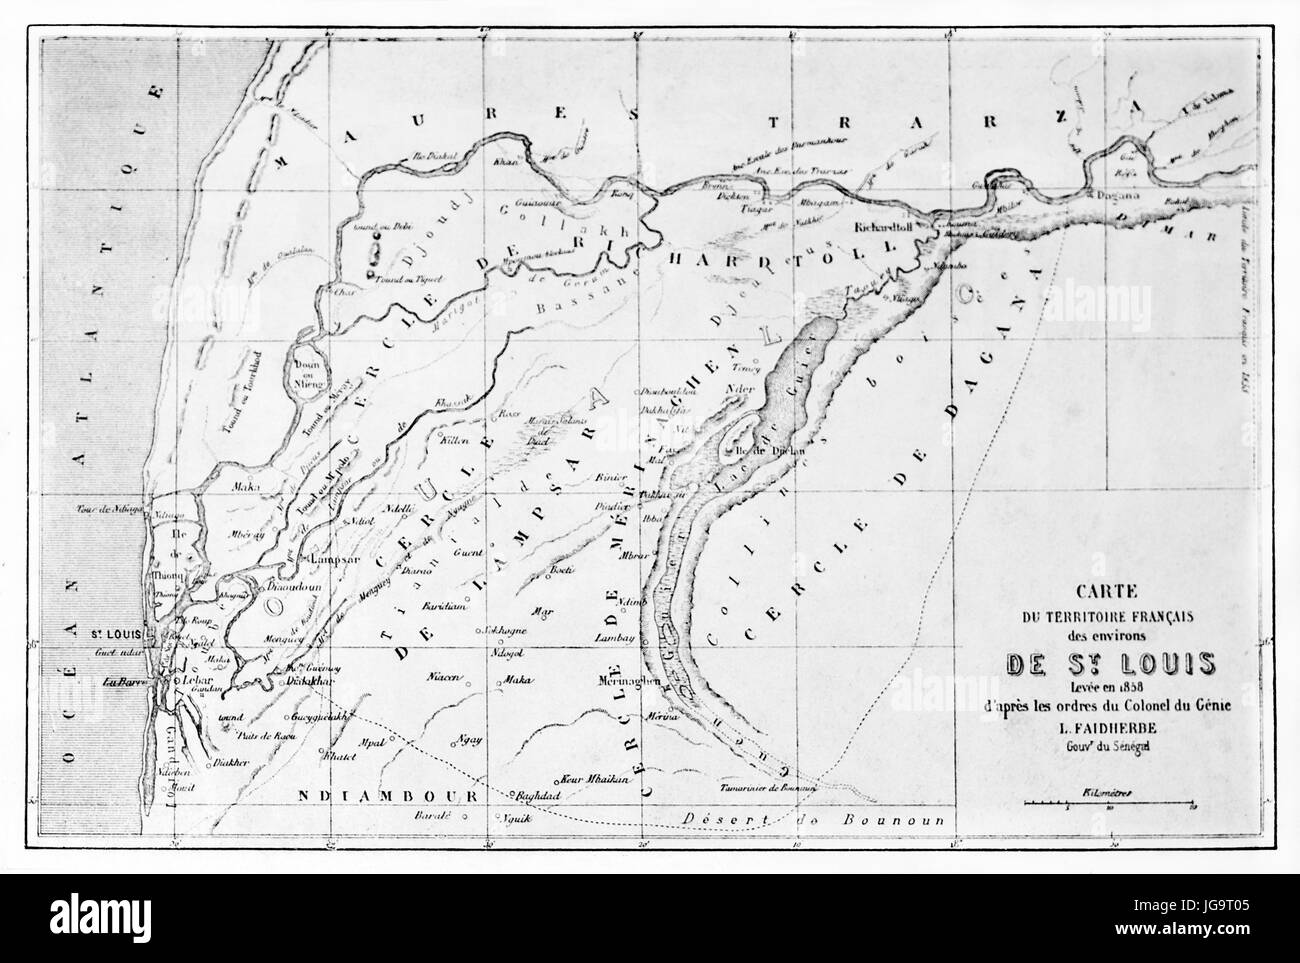 Schwarz-weiß rechteckige horizontal orientierte alte topographische Saint Louis Region Karte, Senegal. Alte graue Ton Radierung Stil Kunst von Blanchard 1861 Stockfoto